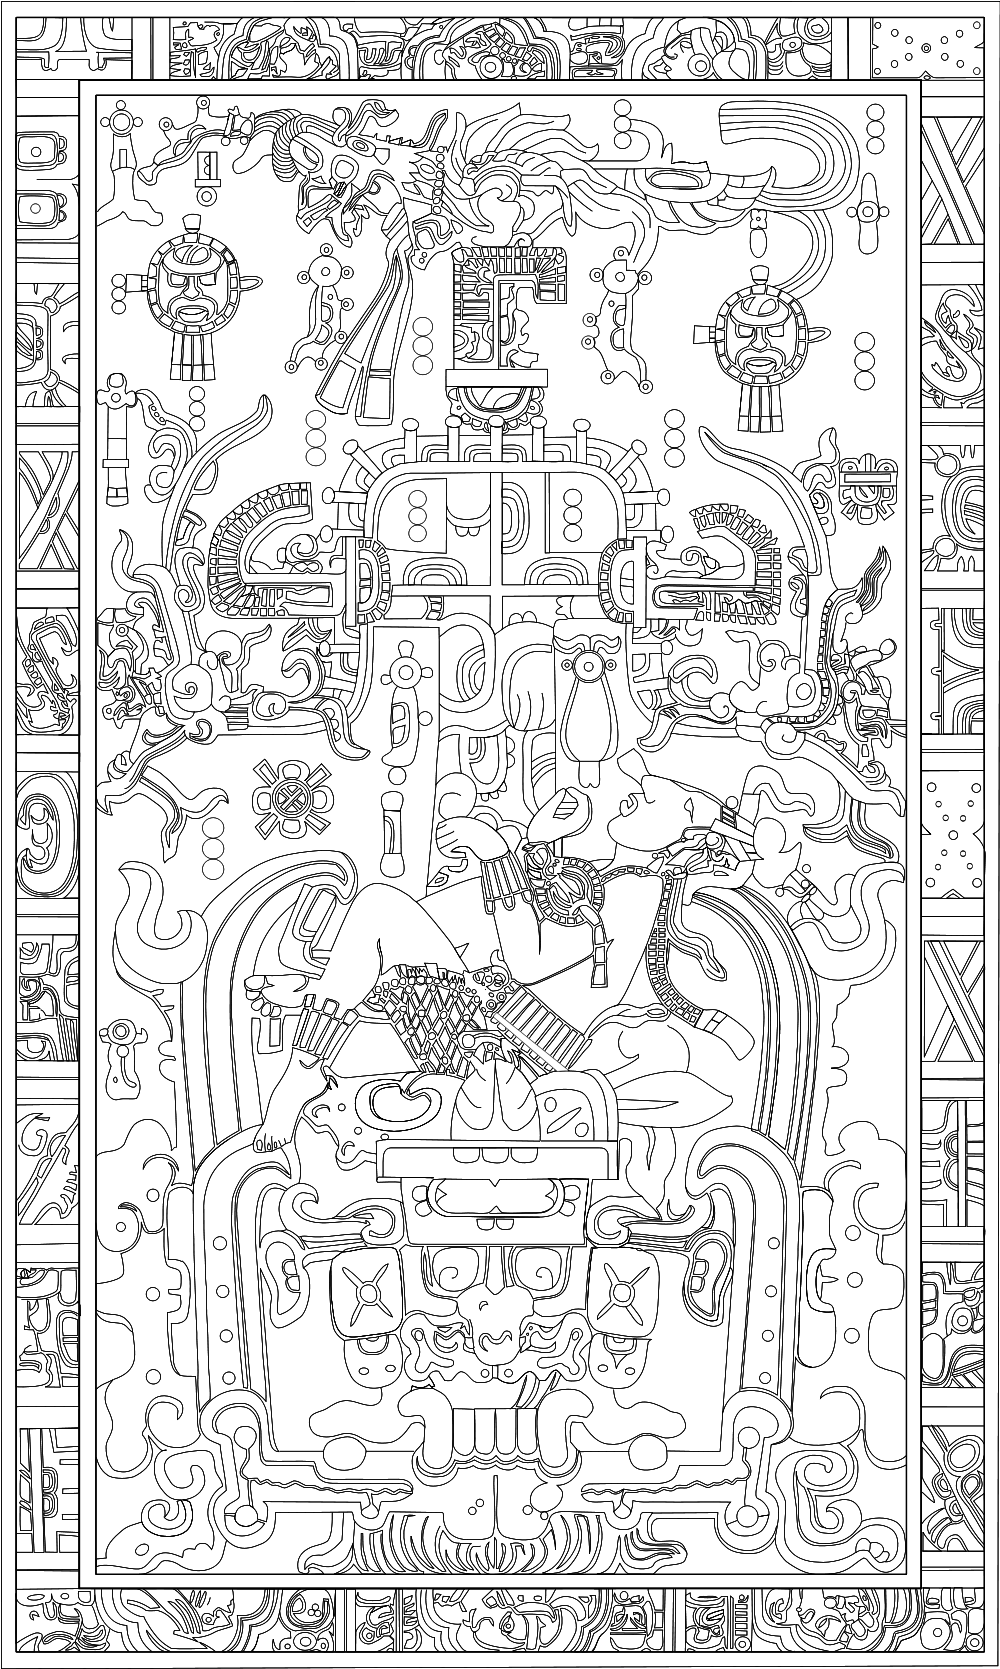 Рисунок на саркофаге в гробнице правителя Пакаля